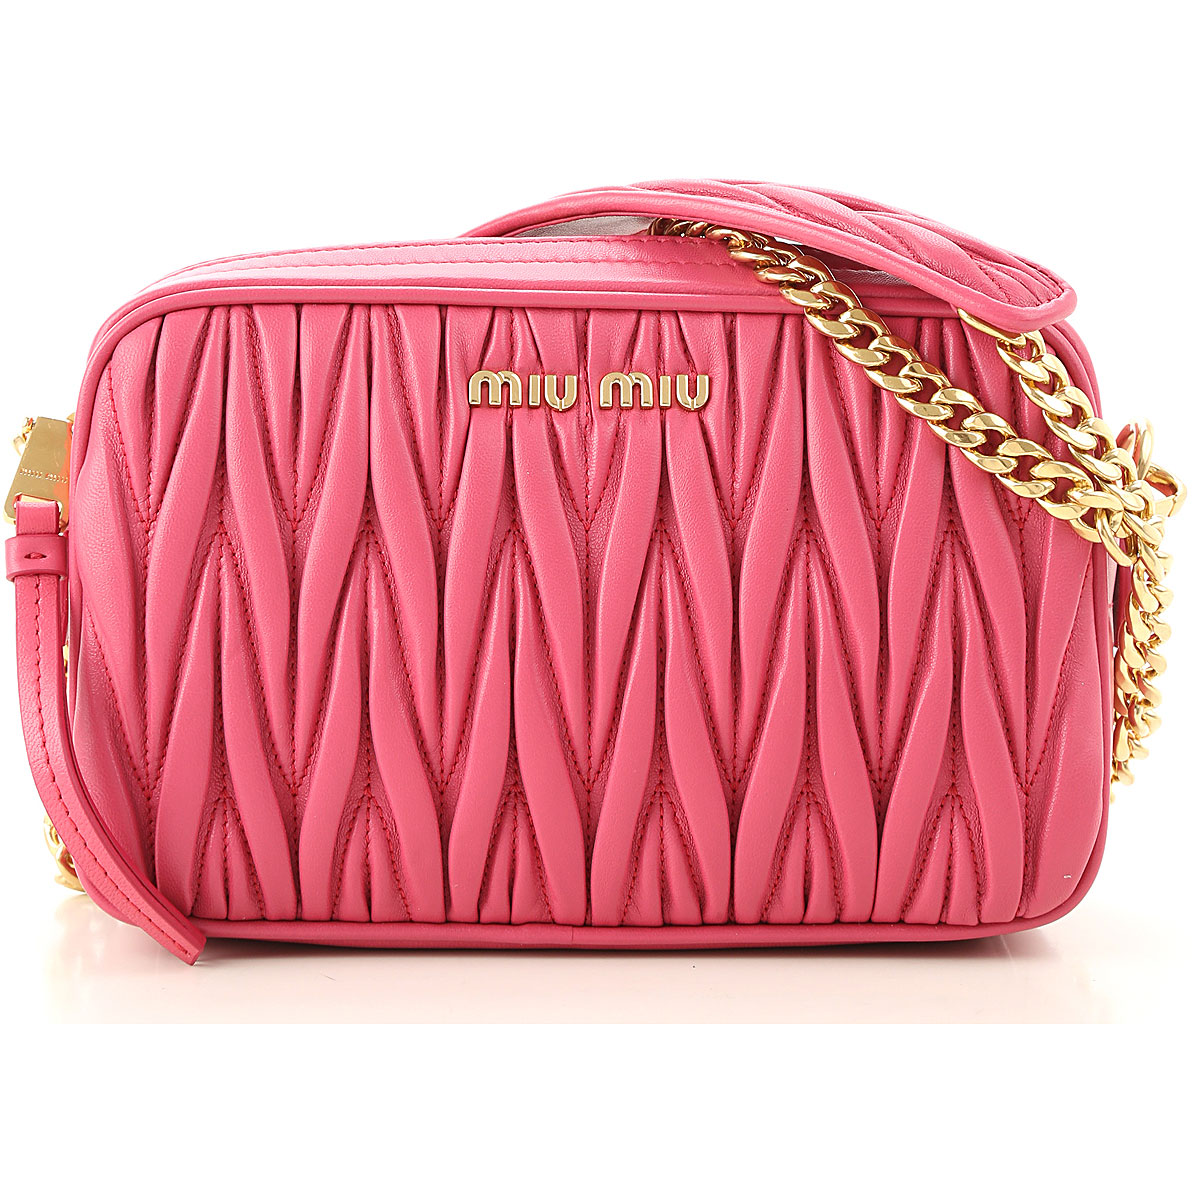 Handbags Miu Miu, Style code: 5bh118-n88-f01bk